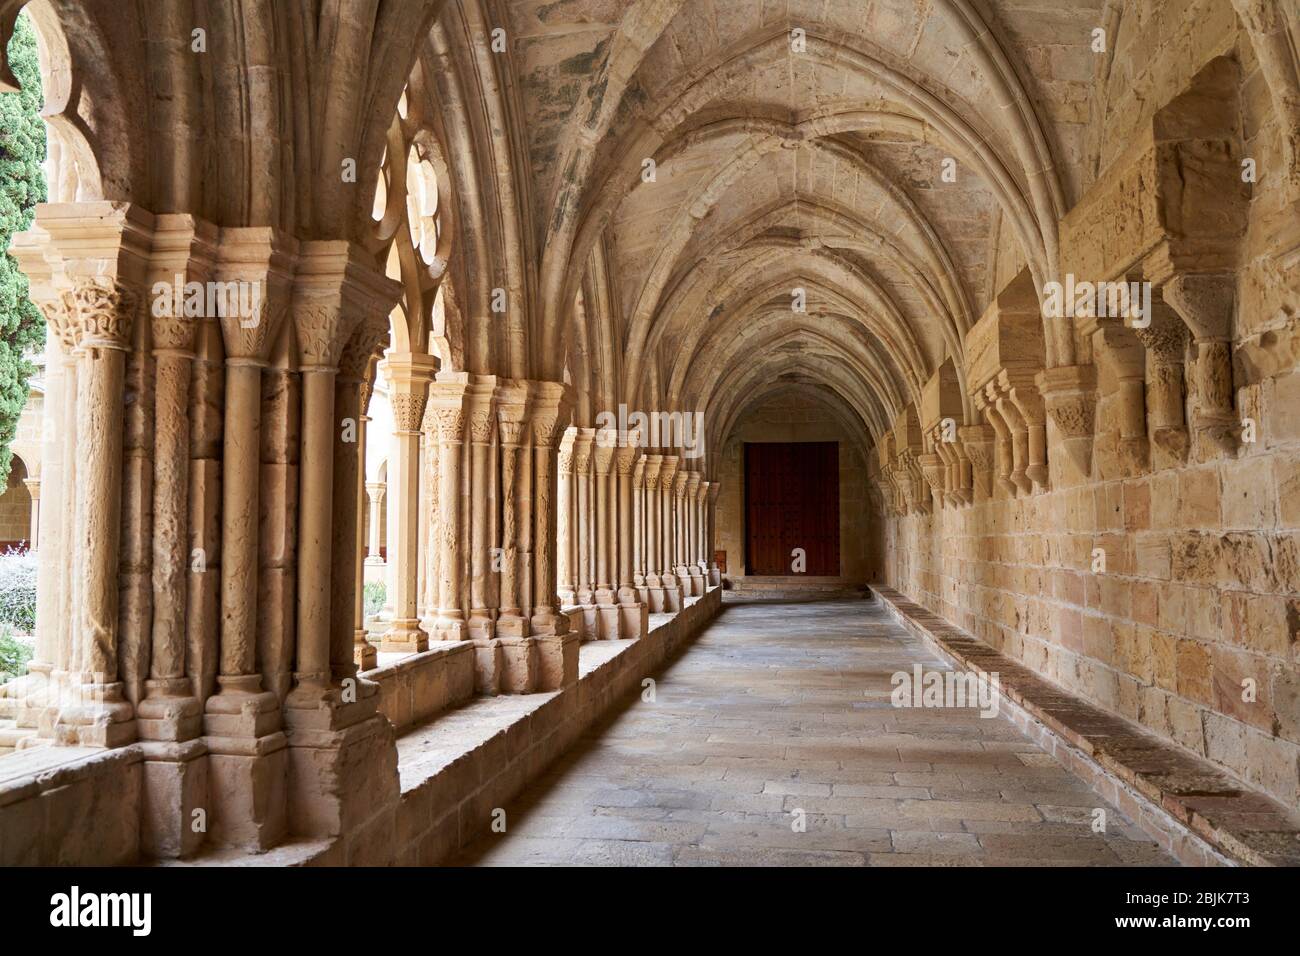 Cloister, Monastery of Santa Maria de Poblet, Tarragona province, Catalonia, Spain, Europe Stock Photo